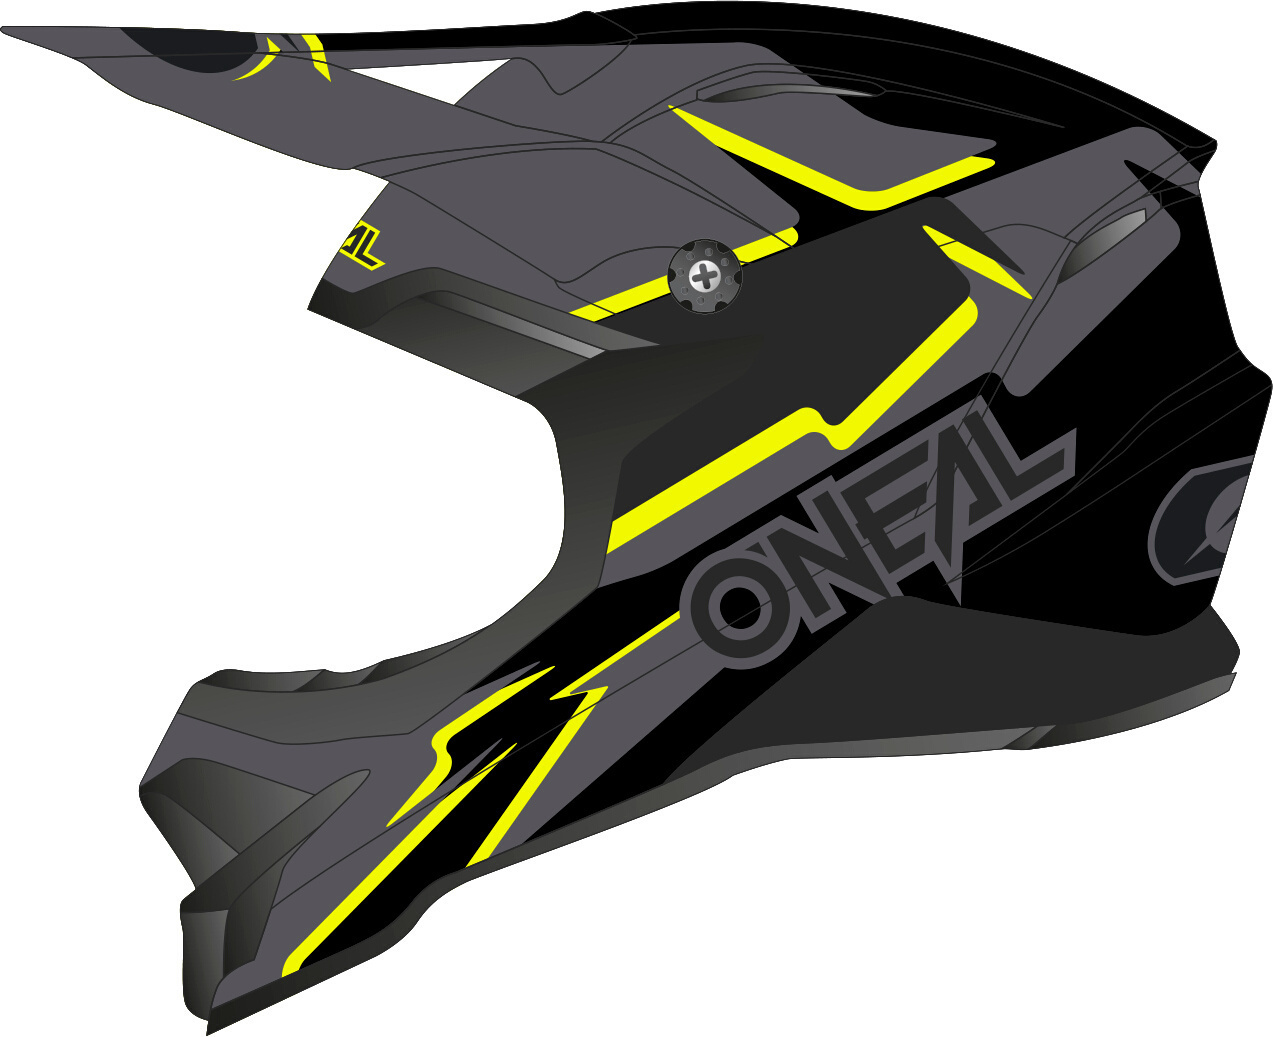 Oneal 3Series Voltage Motocross Helm, schwarz-gelb, Größe XL, schwarz-gelb, Größe XL